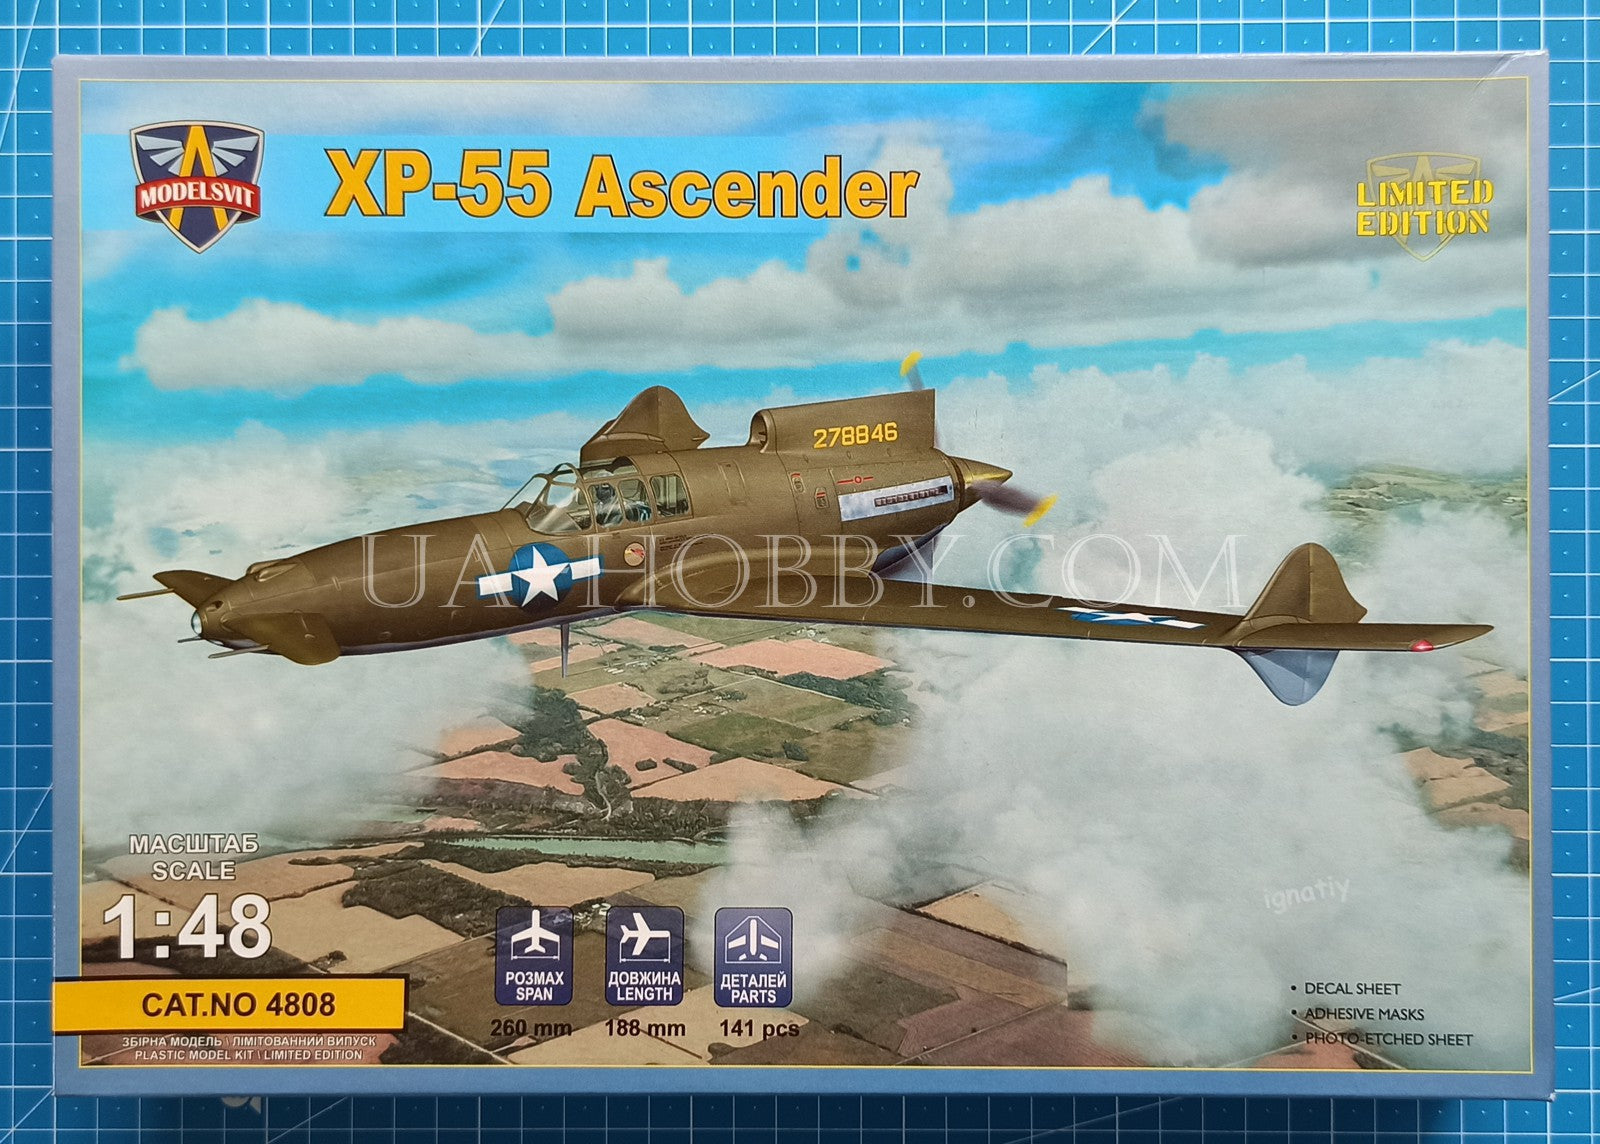 1/48 XP-55 Ascender. ModelSvit 4808